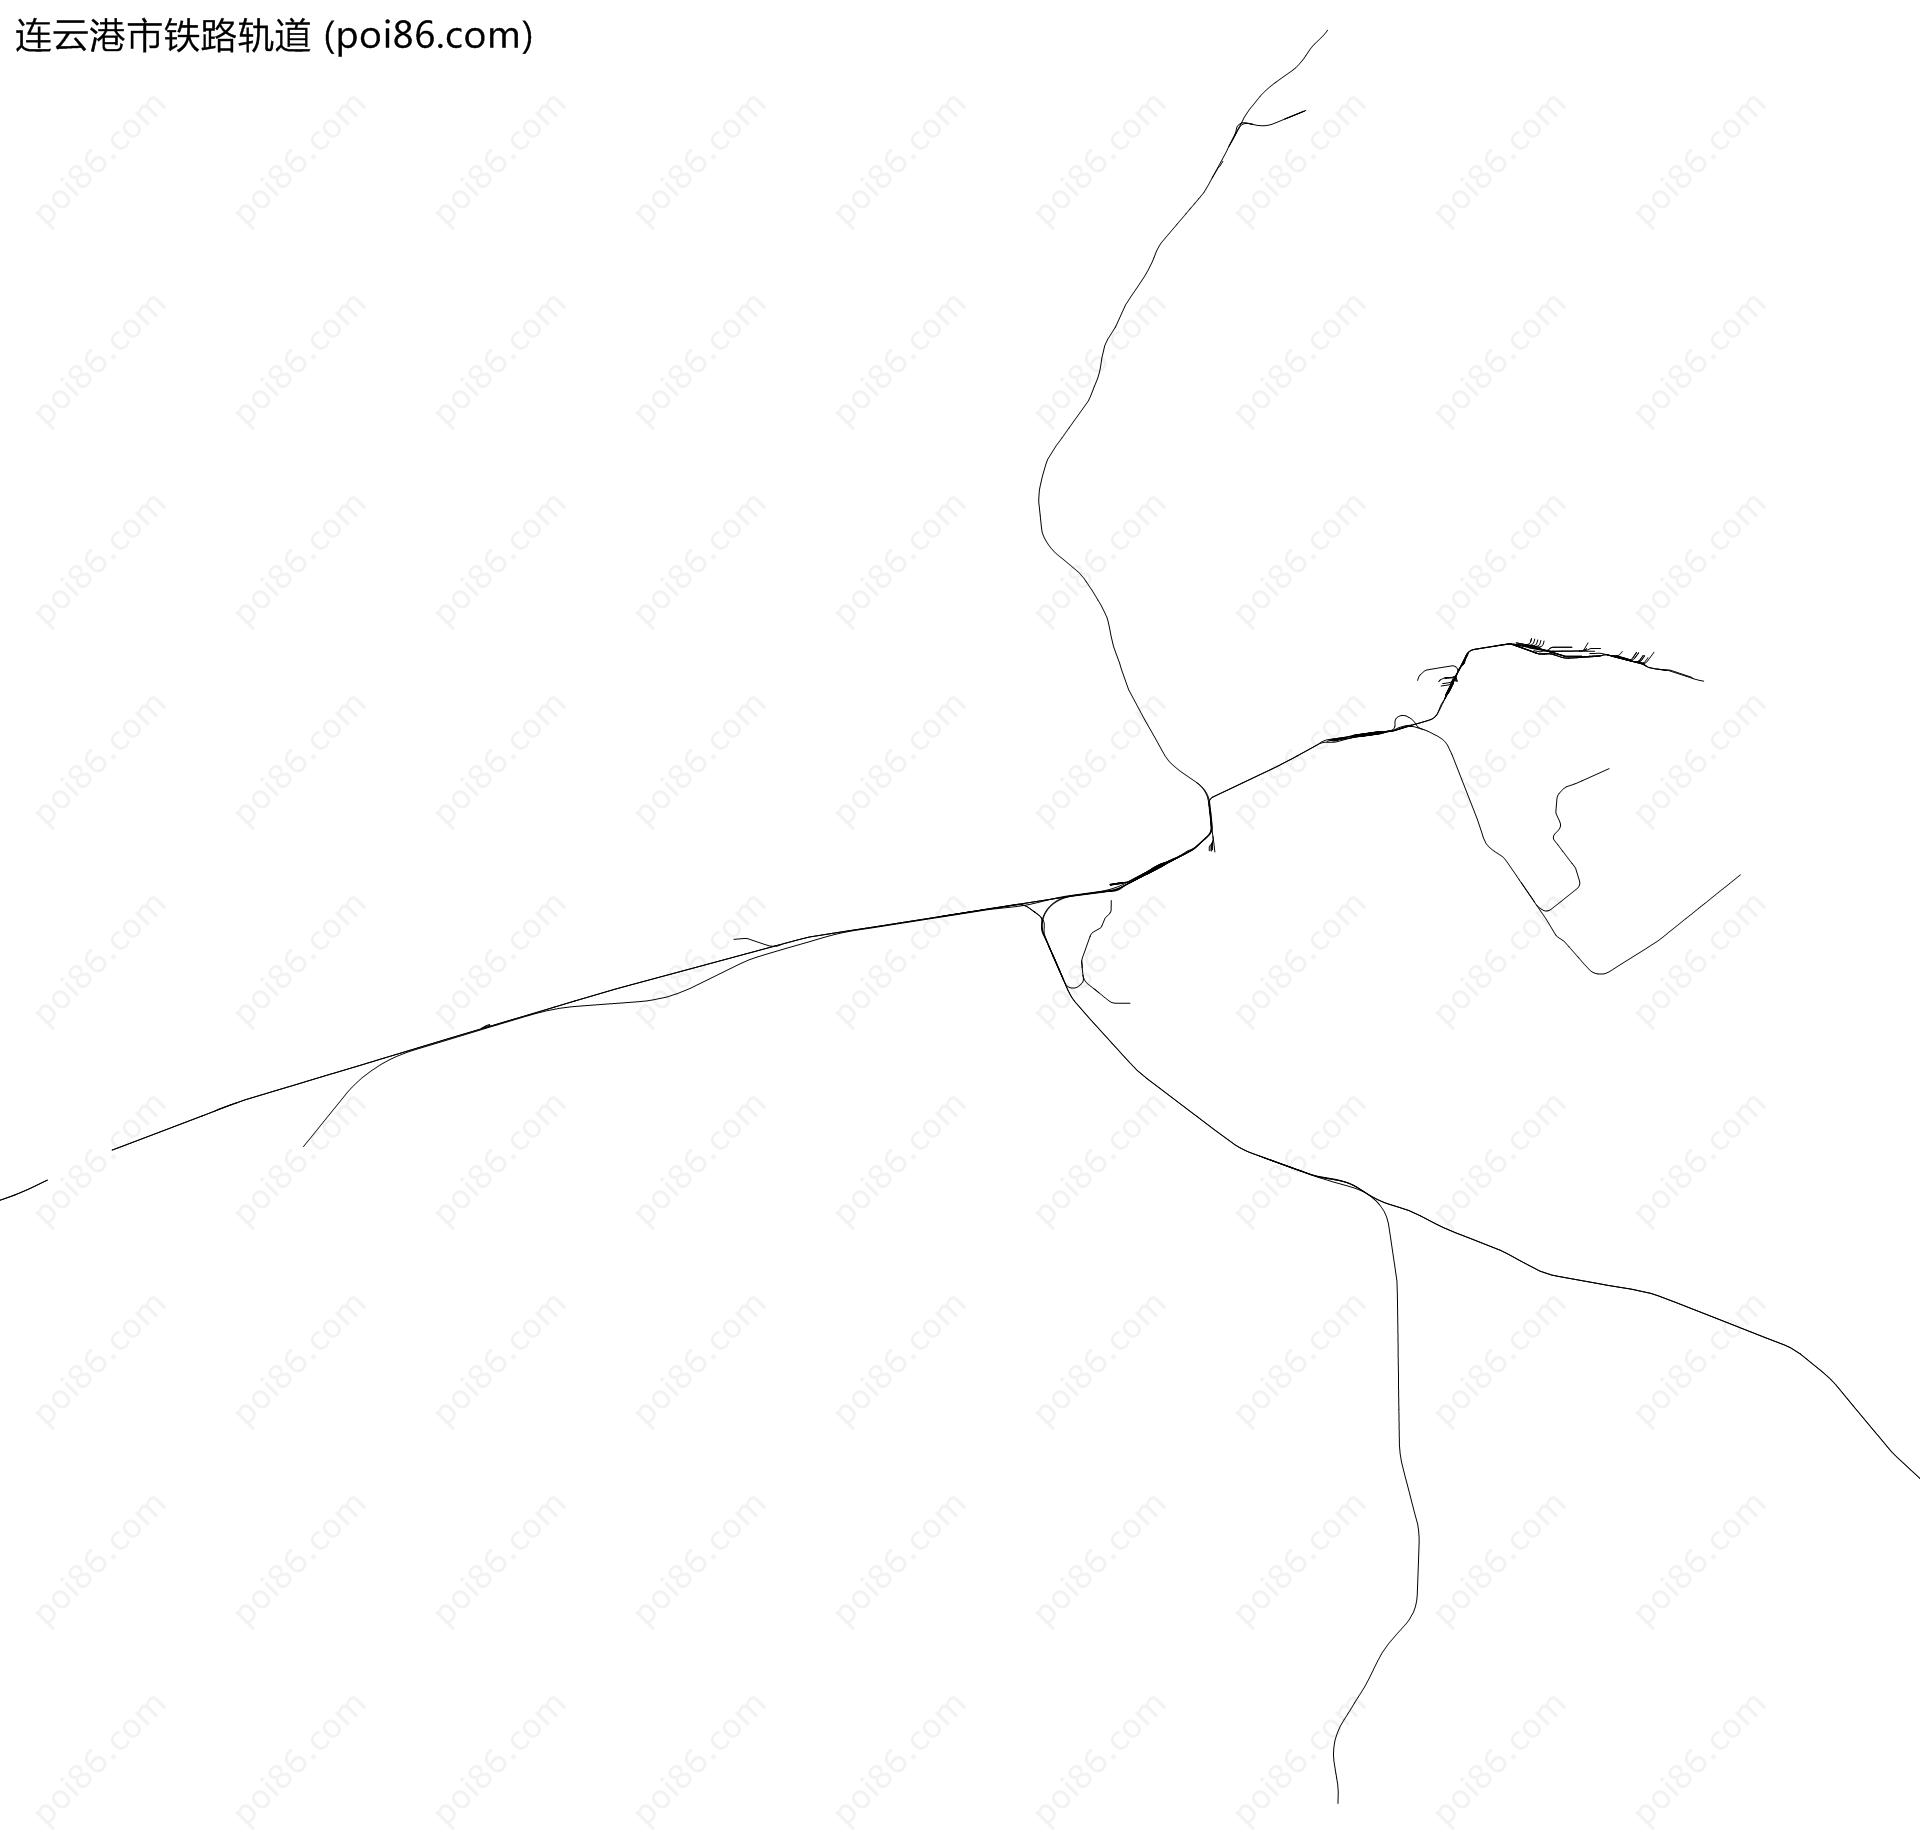 连云港市铁路轨道地图